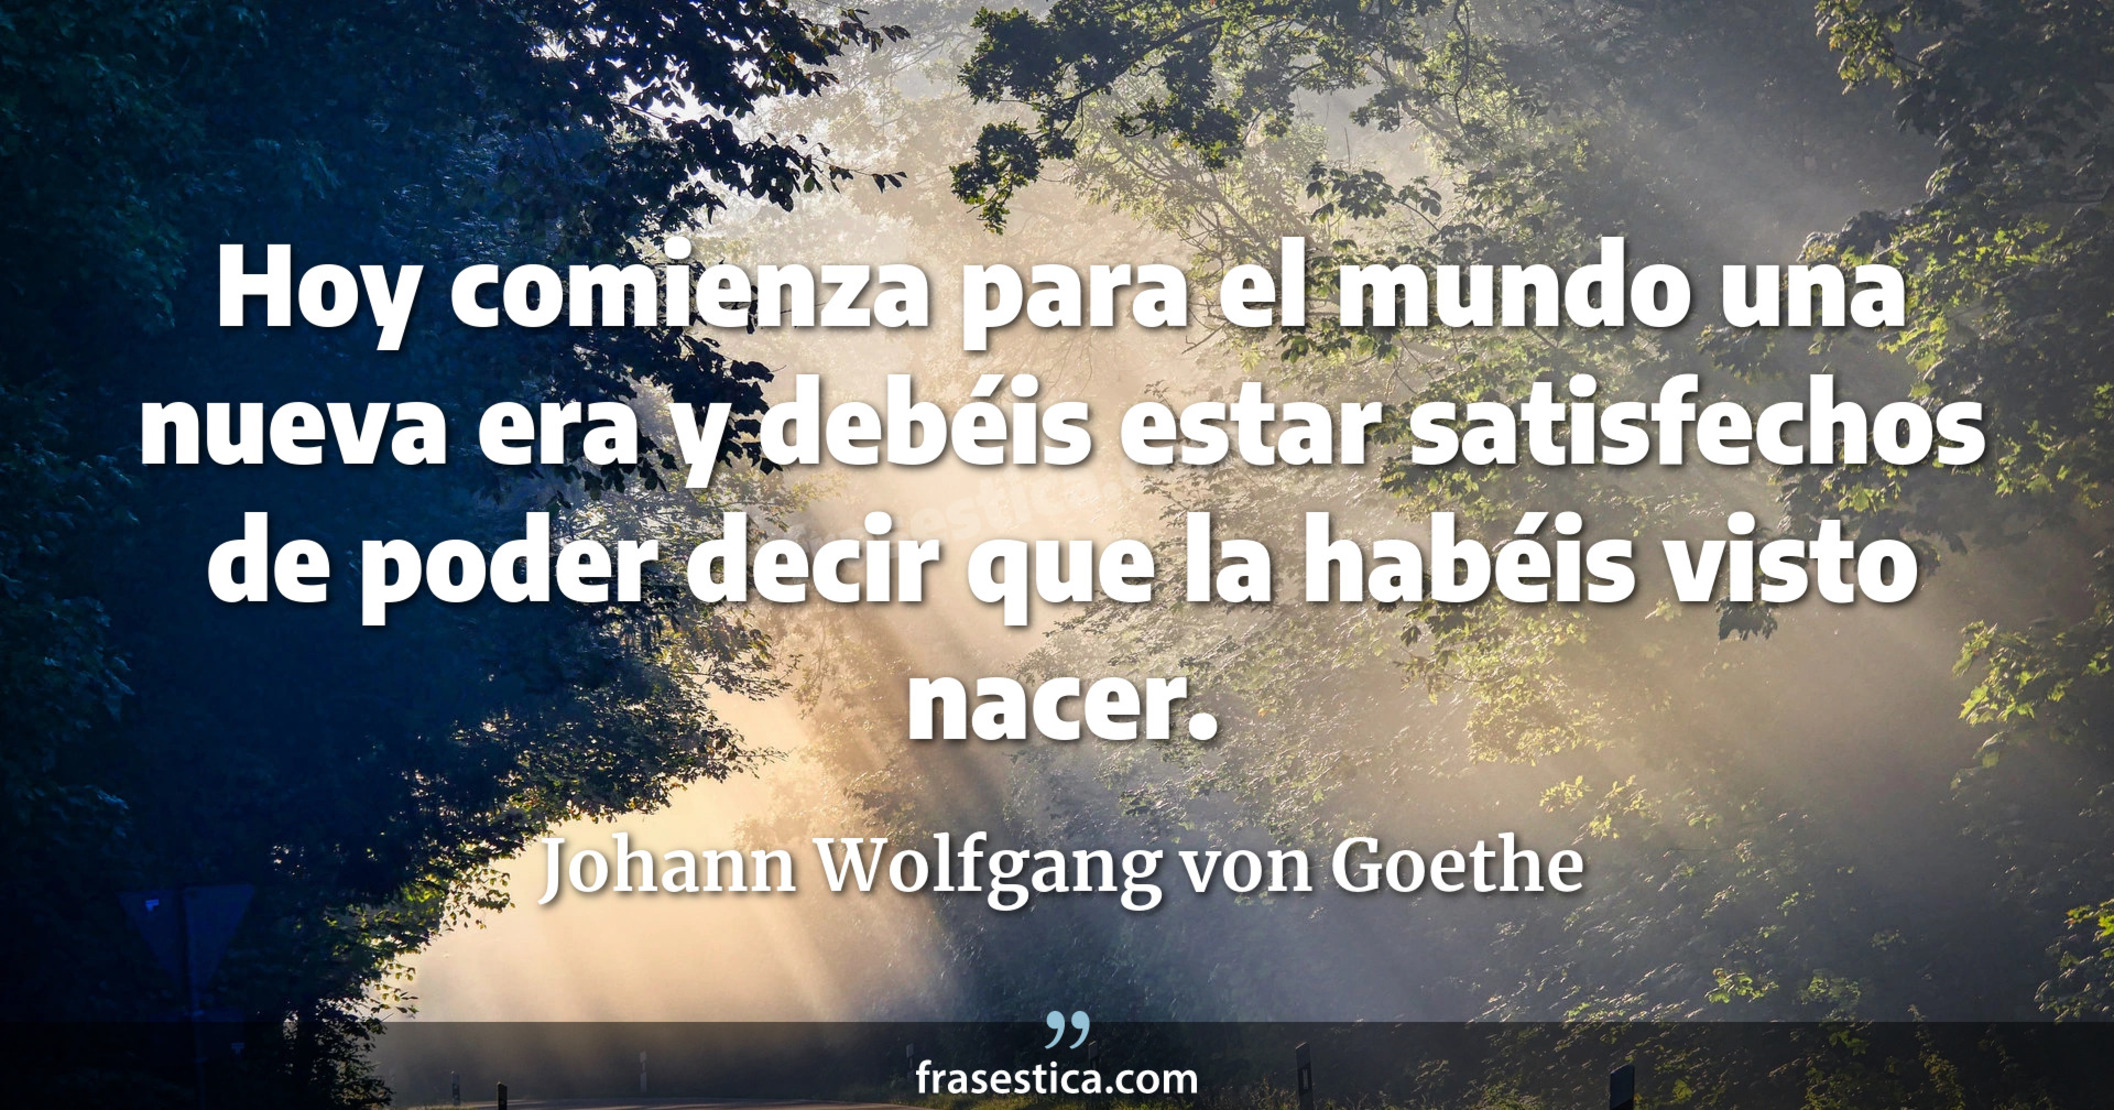 Hoy comienza para el mundo una nueva era y debéis estar satisfechos de poder decir que la habéis visto nacer. - Johann Wolfgang von Goethe